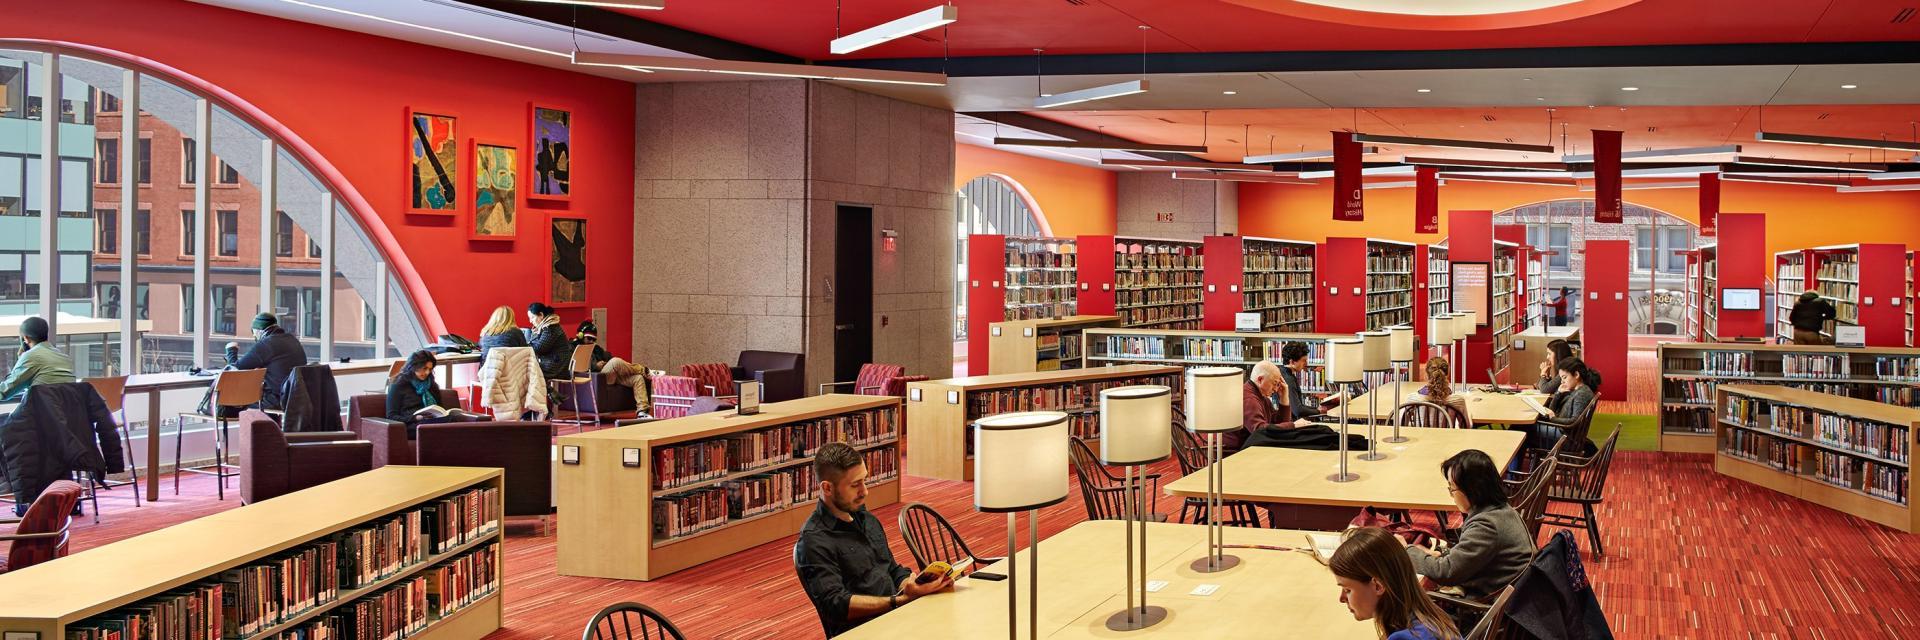 波士顿公共图书馆百家乐软件图书馆建设